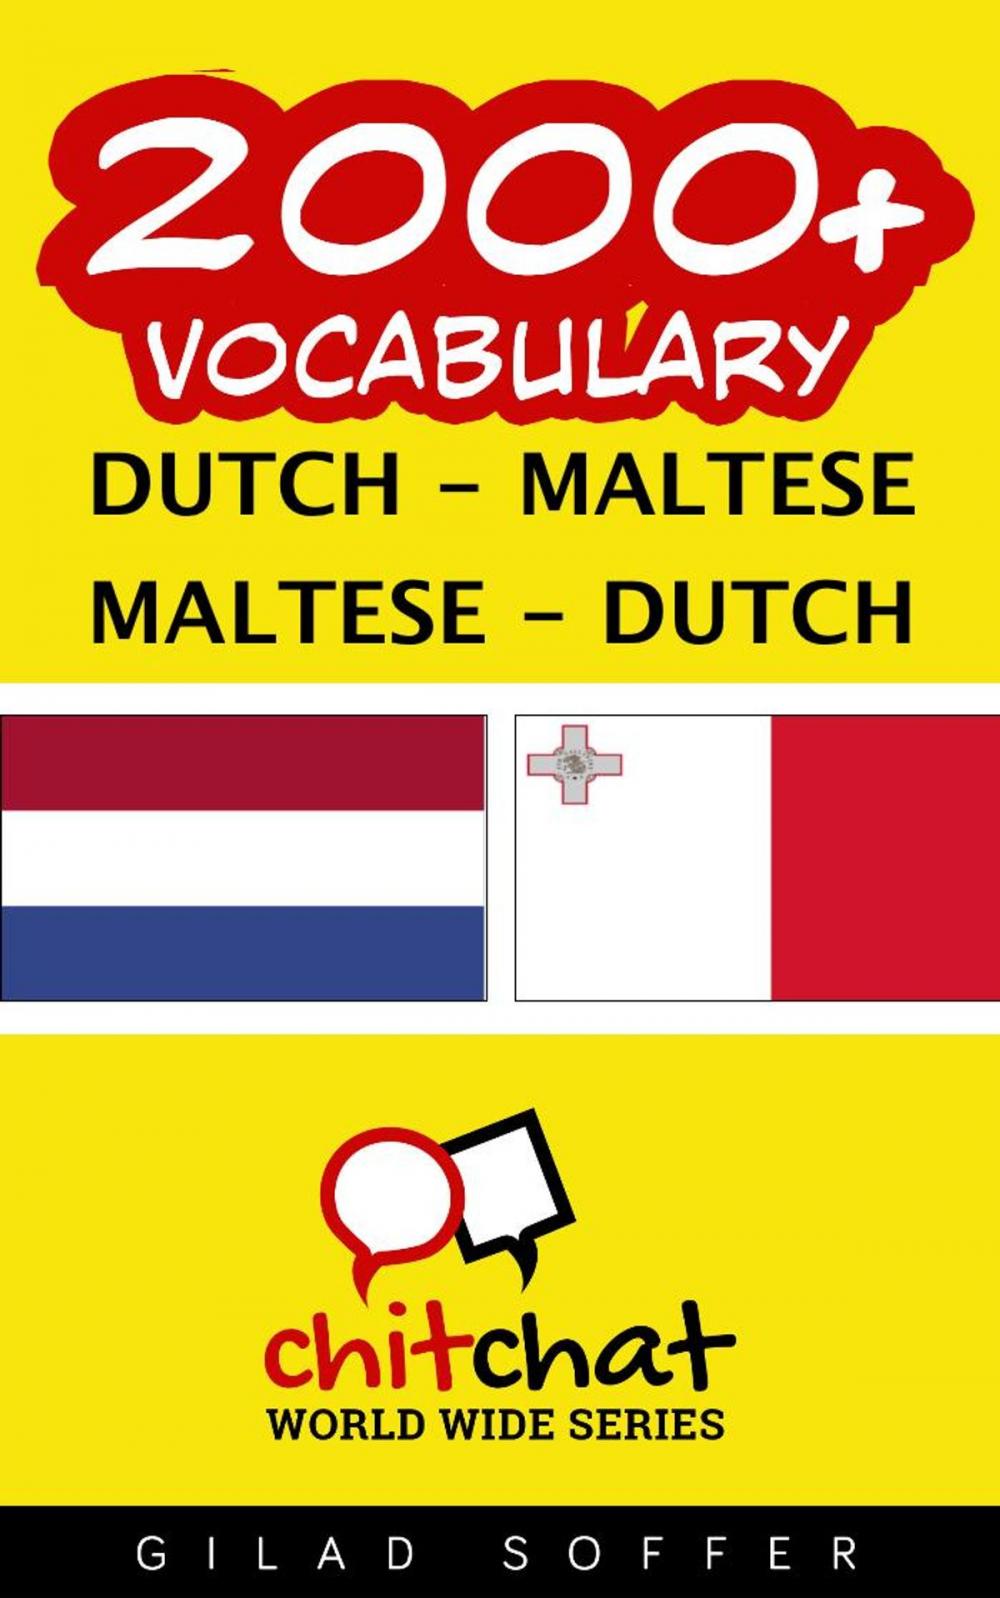 Big bigCover of 2000+ Vocabulary Dutch - Maltese